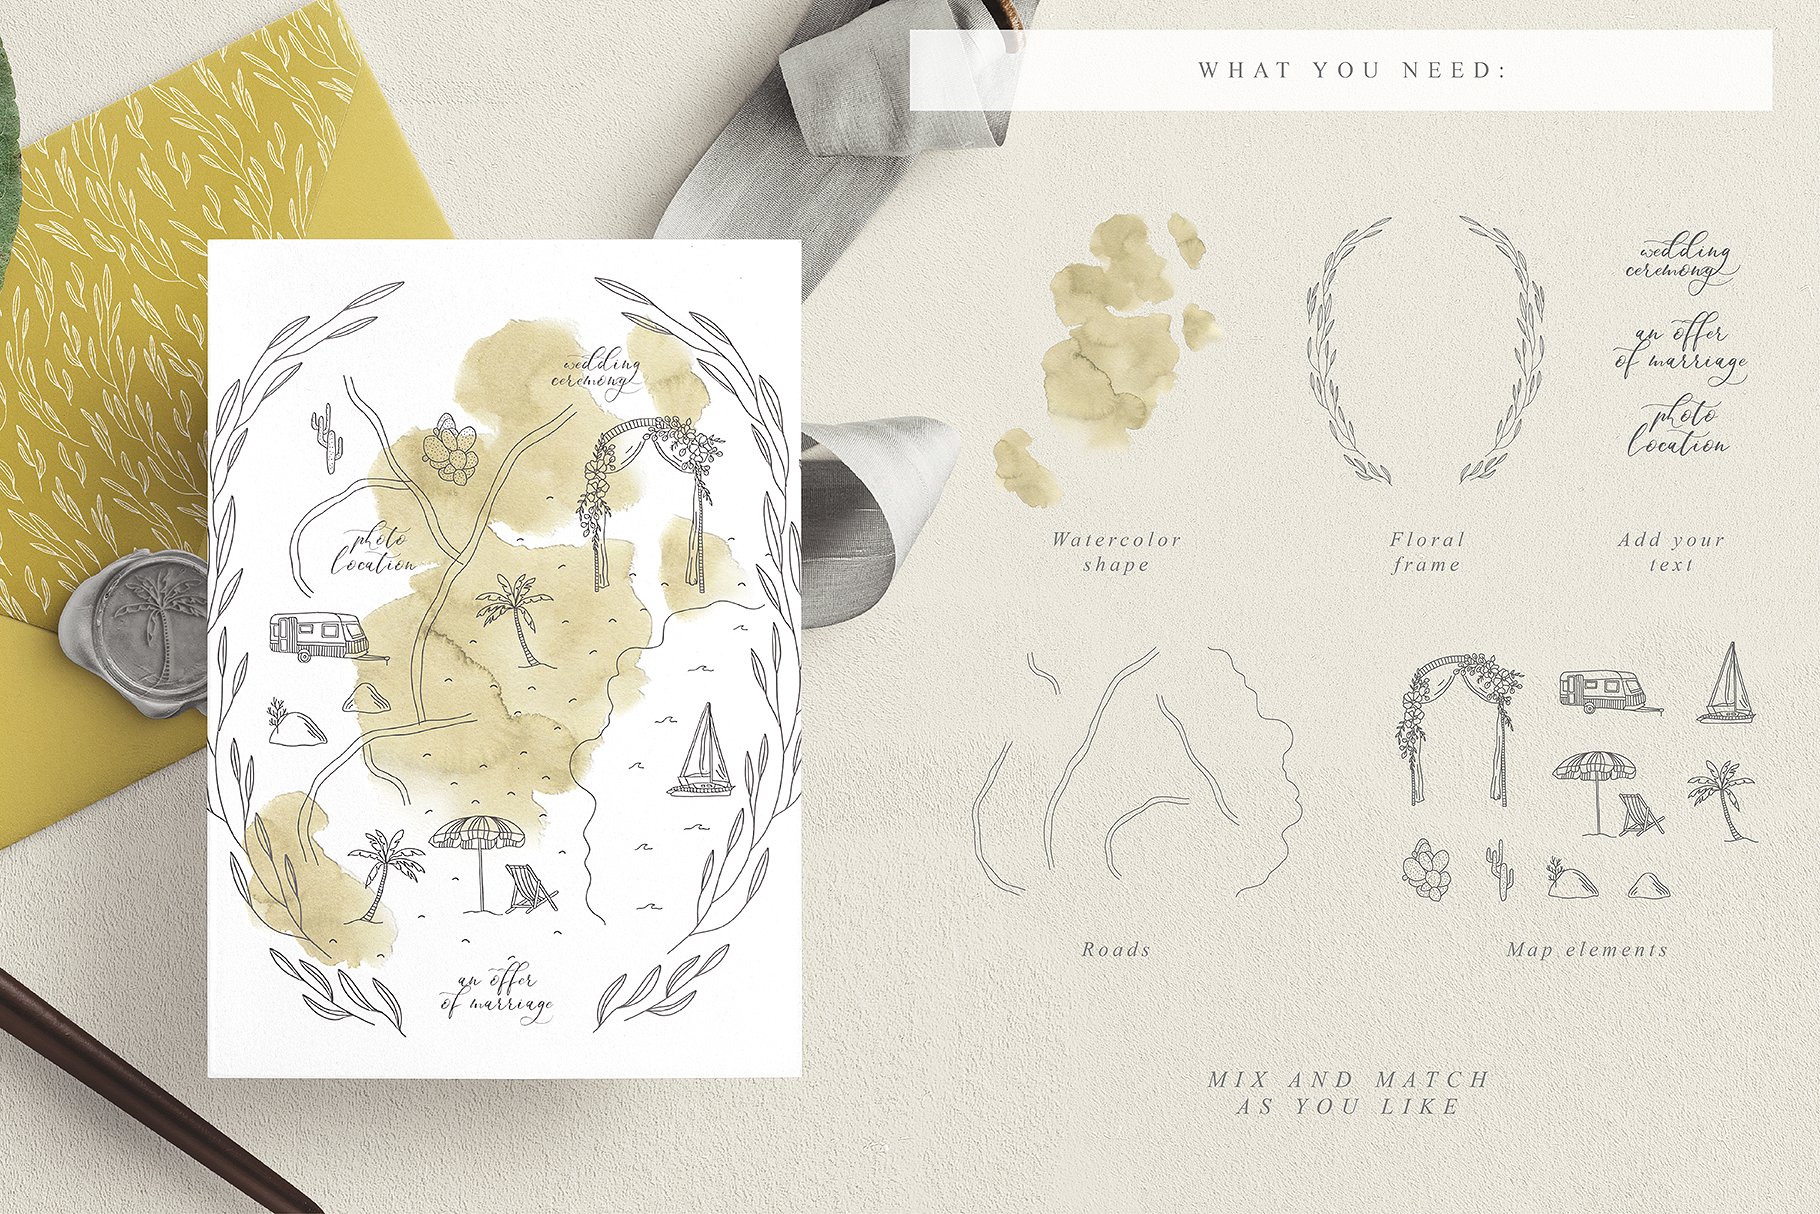 创意文艺风格婚礼邀请函地图设计素材包 Wedding Map Creator Collection插图(12)